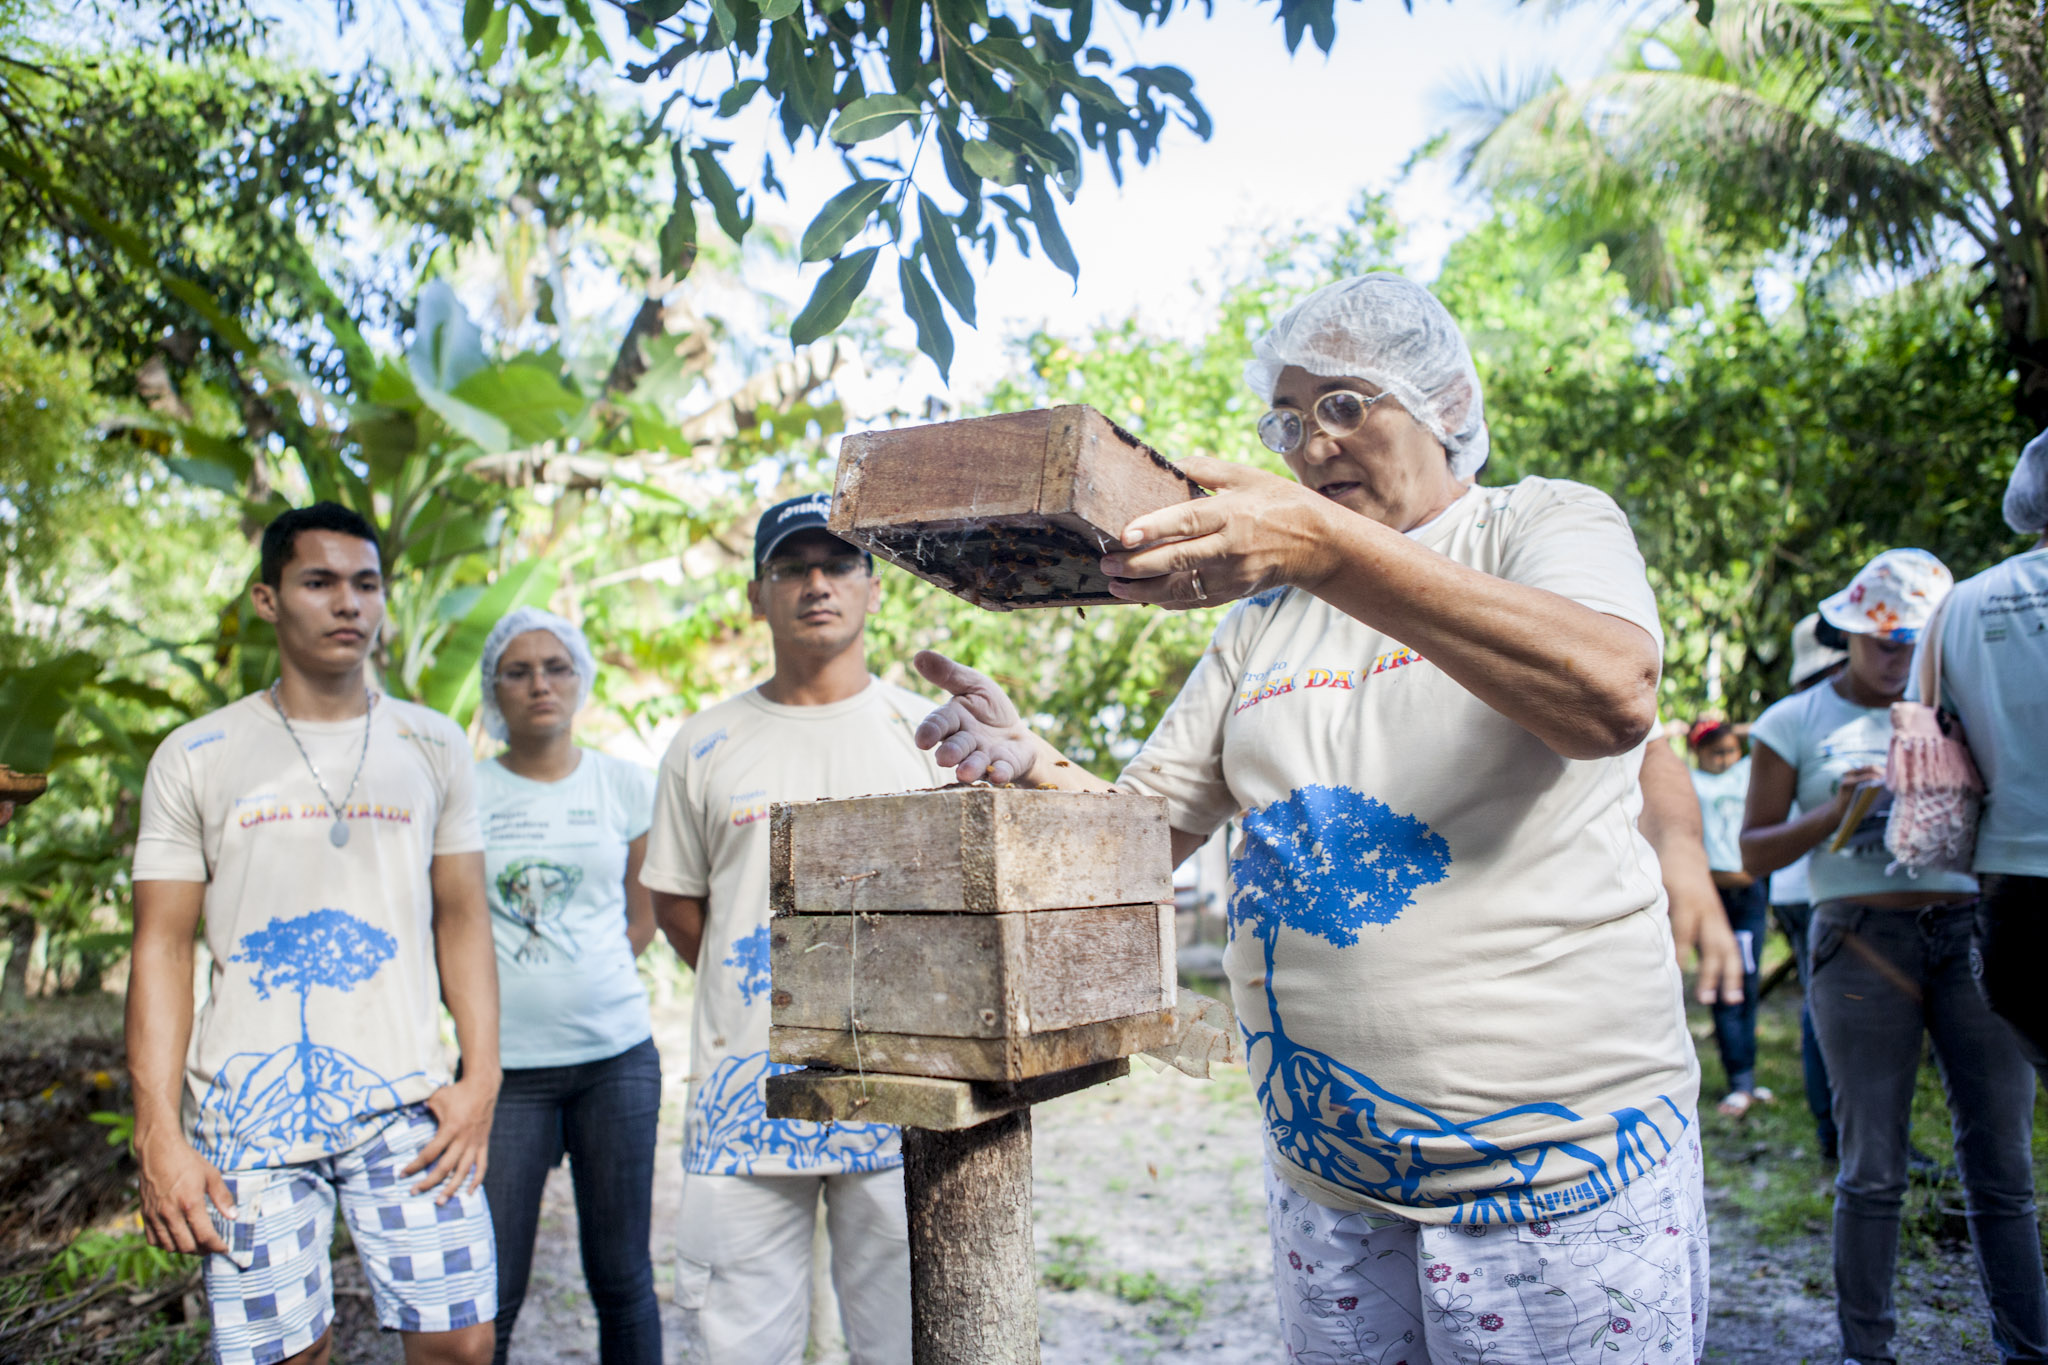 Meliponicultoras de Curuçá produzem e comercializam mel de abelhas nativas da Amazônia no próprio quintal de casa. Foto: Rafael Araújo